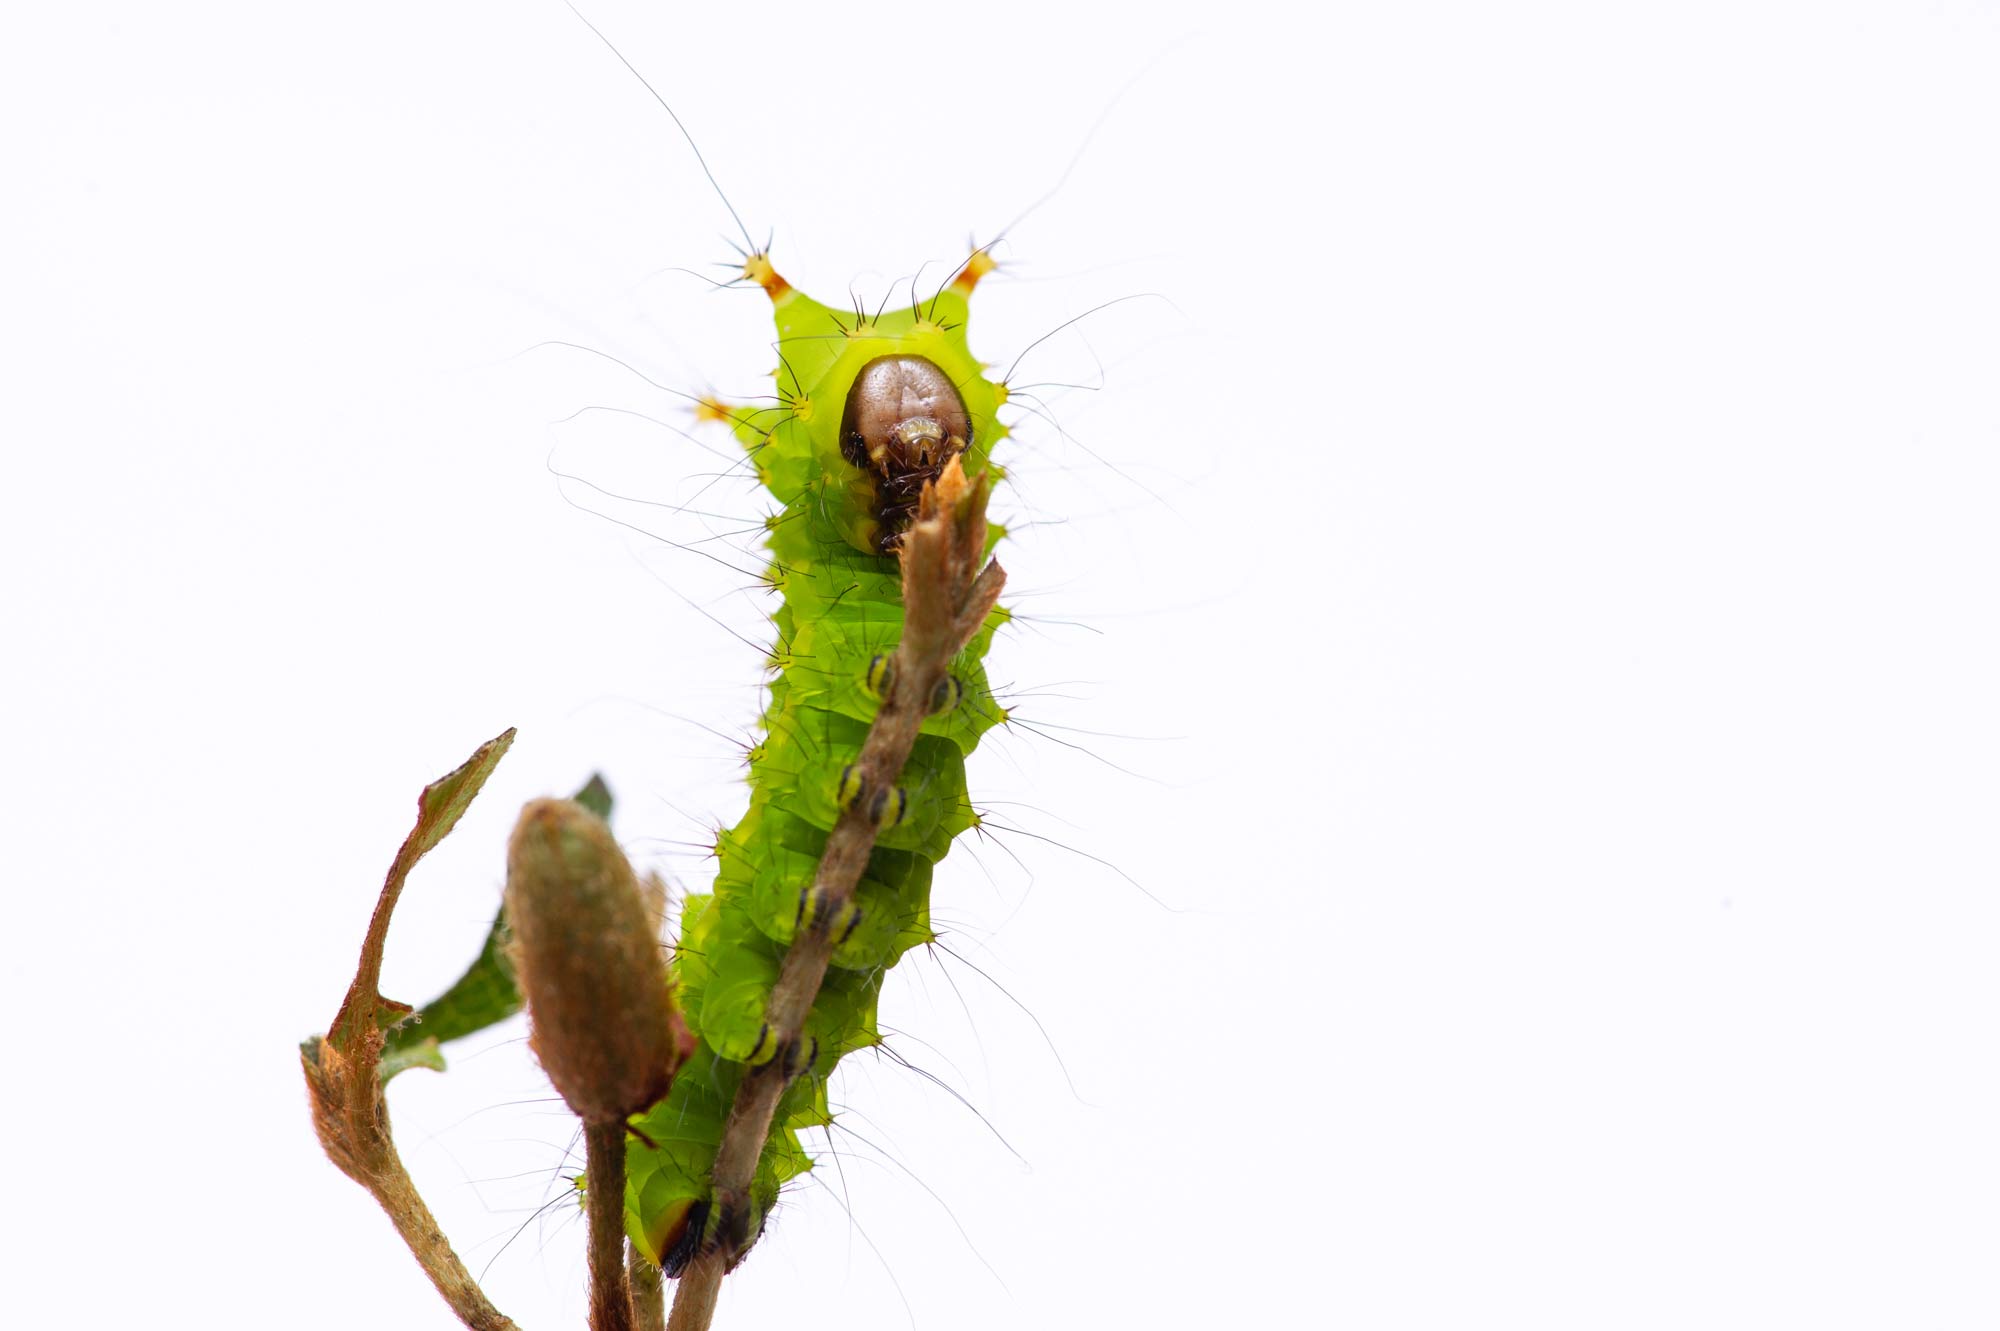 オオミズアオを成虫から幼虫まで紹介 虫の写真と生態なら昆虫写真図鑑 ムシミル